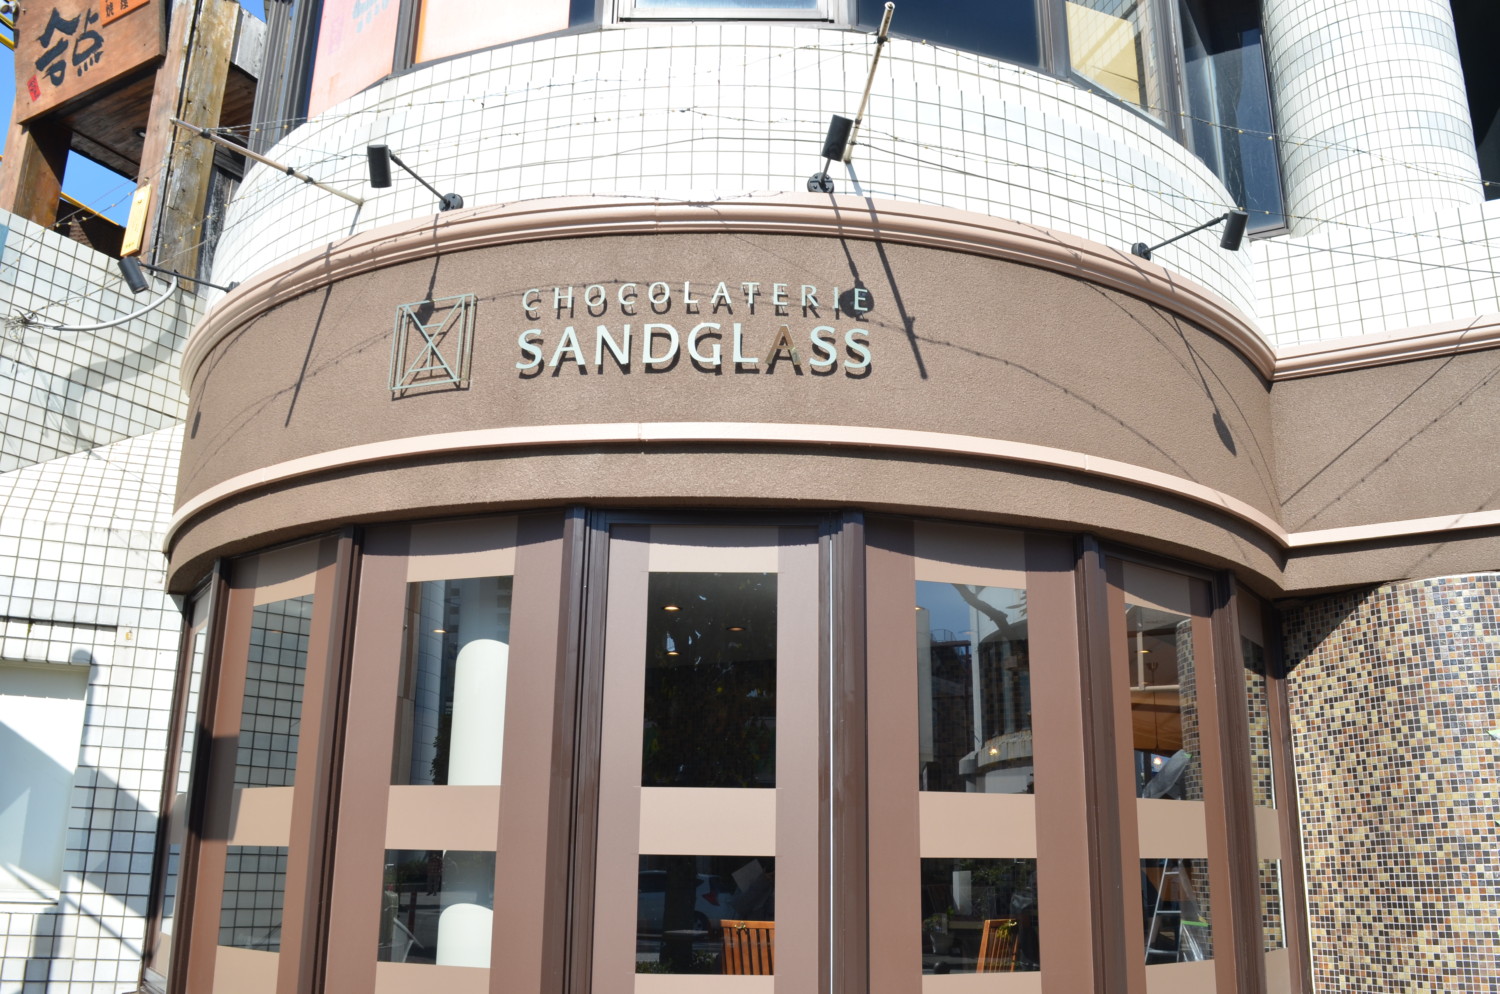 11 1 チョコレート専門店 Sandglass がopen 11月5日 7日はオープン記念セールも Laugh